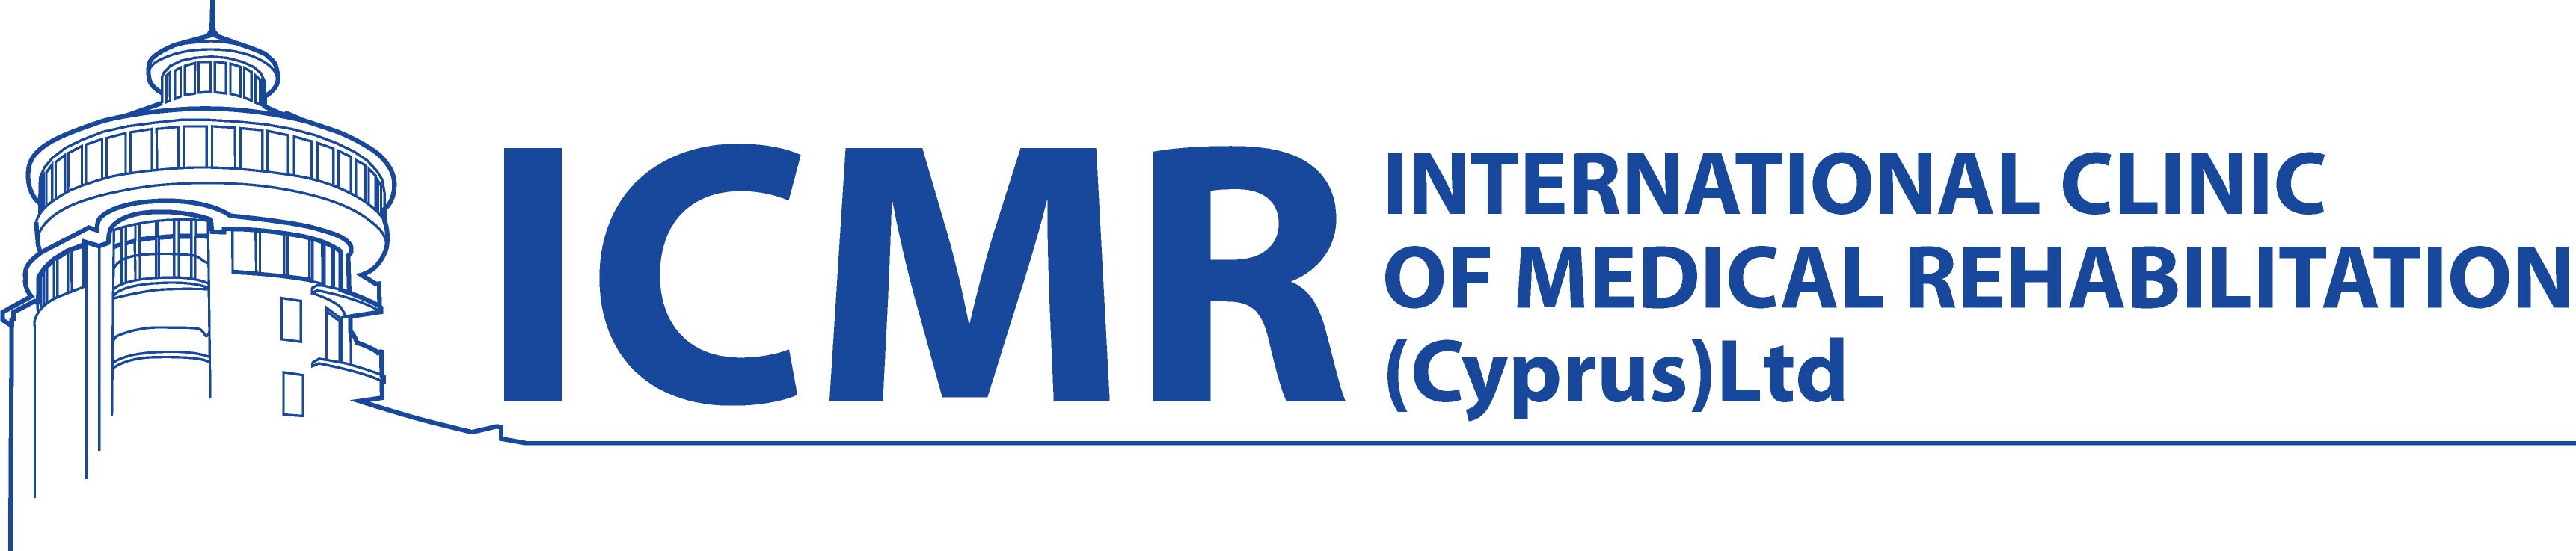 ICMR INTERNATIONAL CLINIC OF MEDICAL REHABILITATION